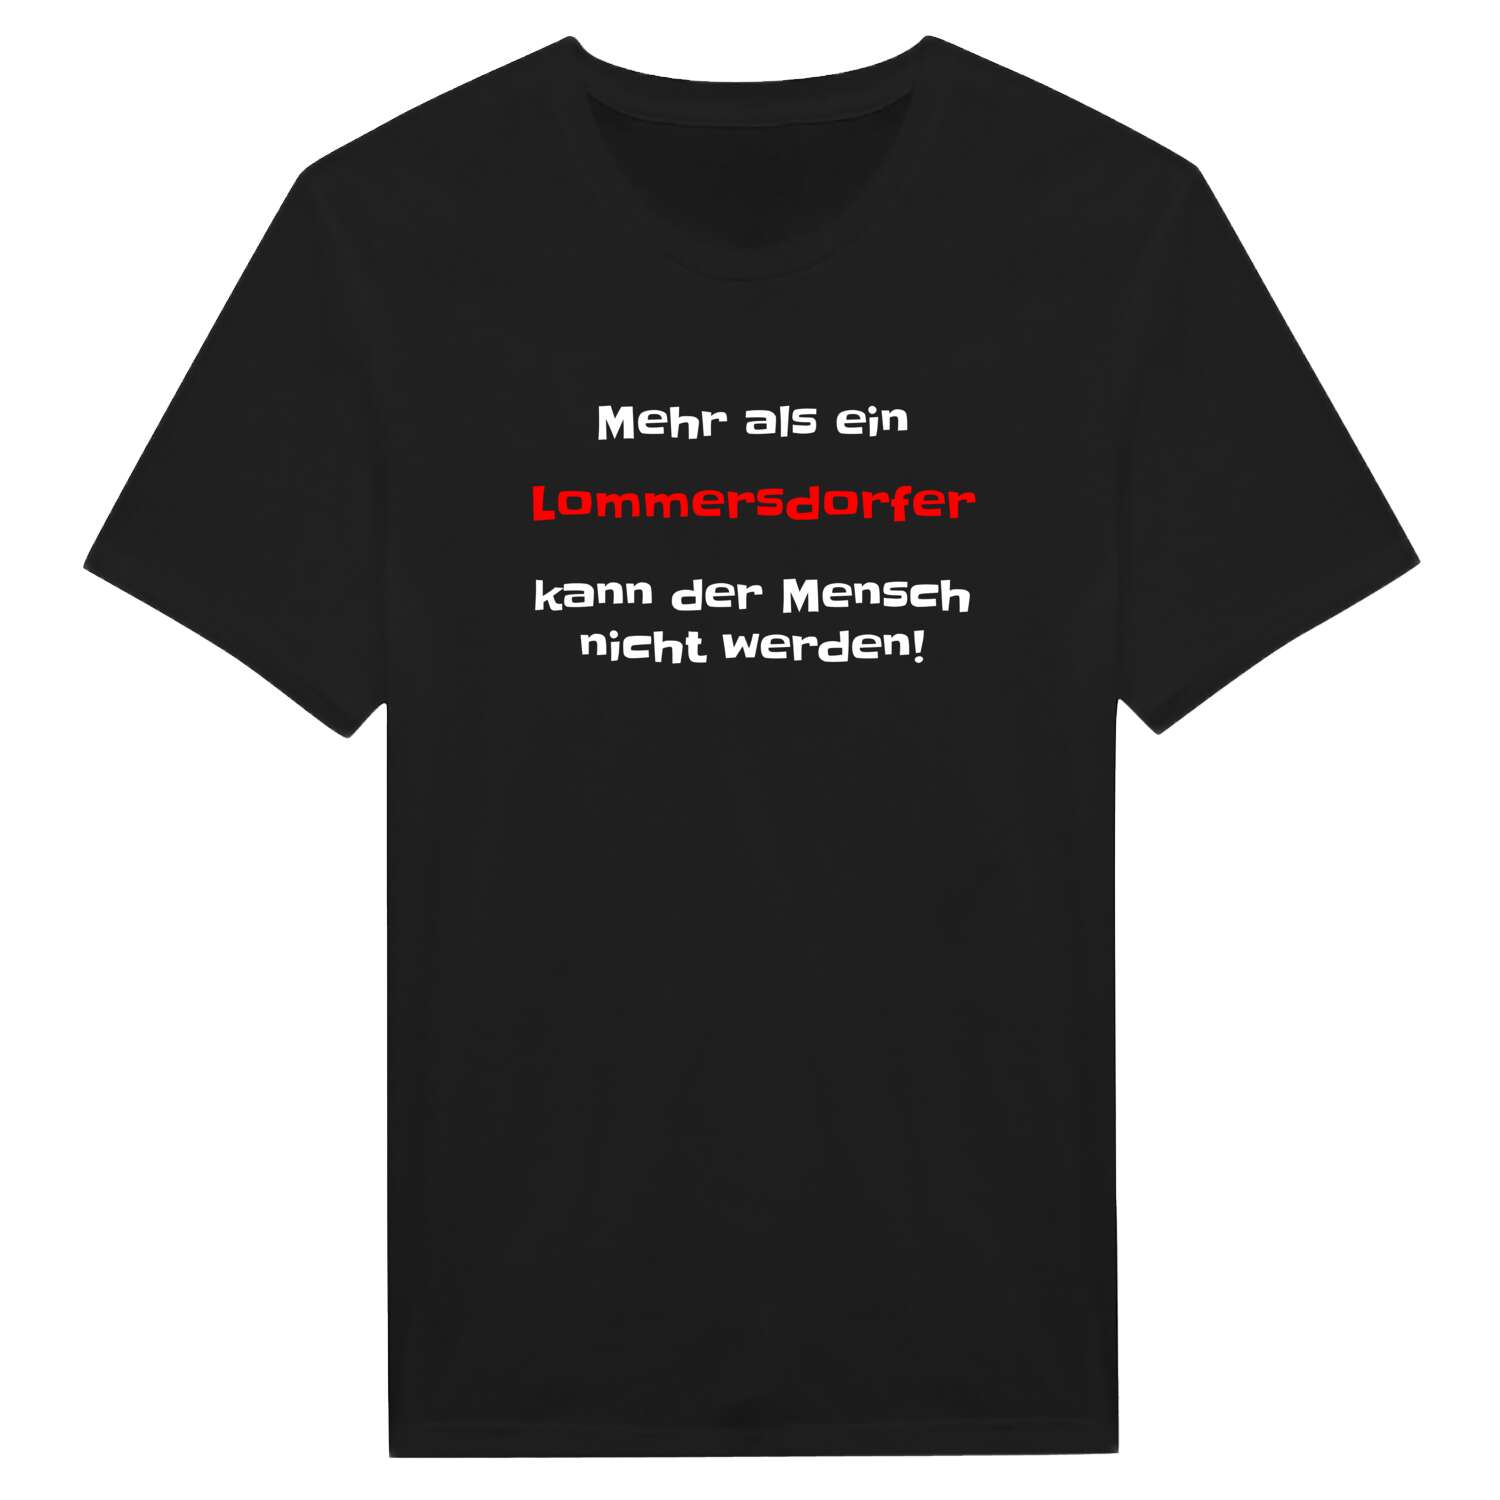 Lommersdorf T-Shirt »Mehr als ein«